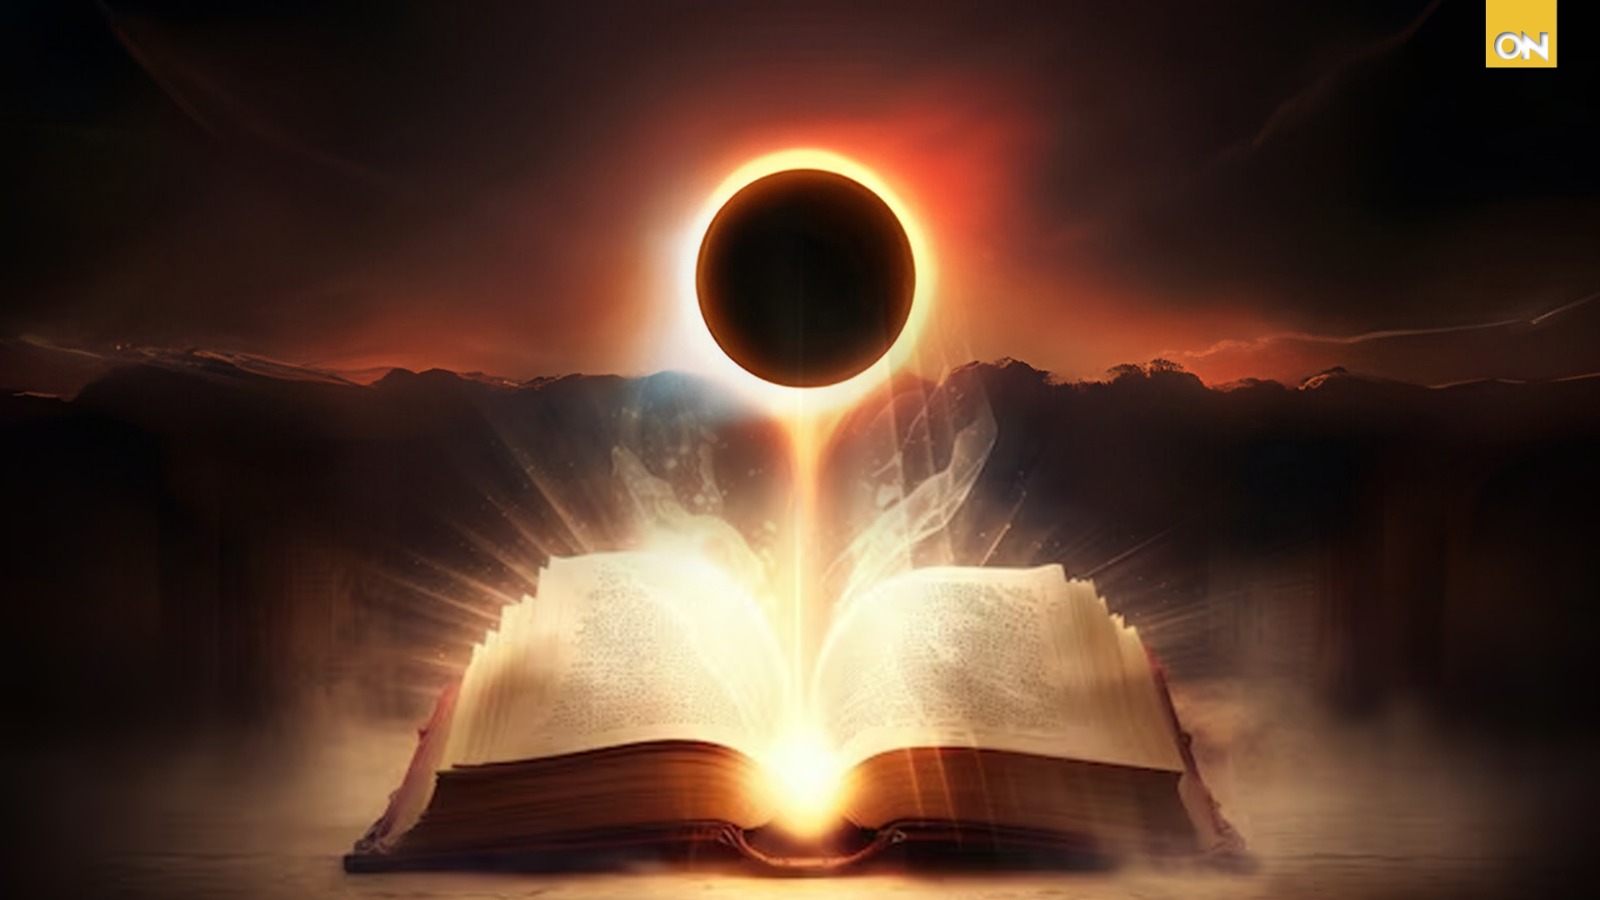 El eclipse y la Biblia: “El sol y la luna se oscurecerán”, ¿Señales celestiales o coincidencias? ?